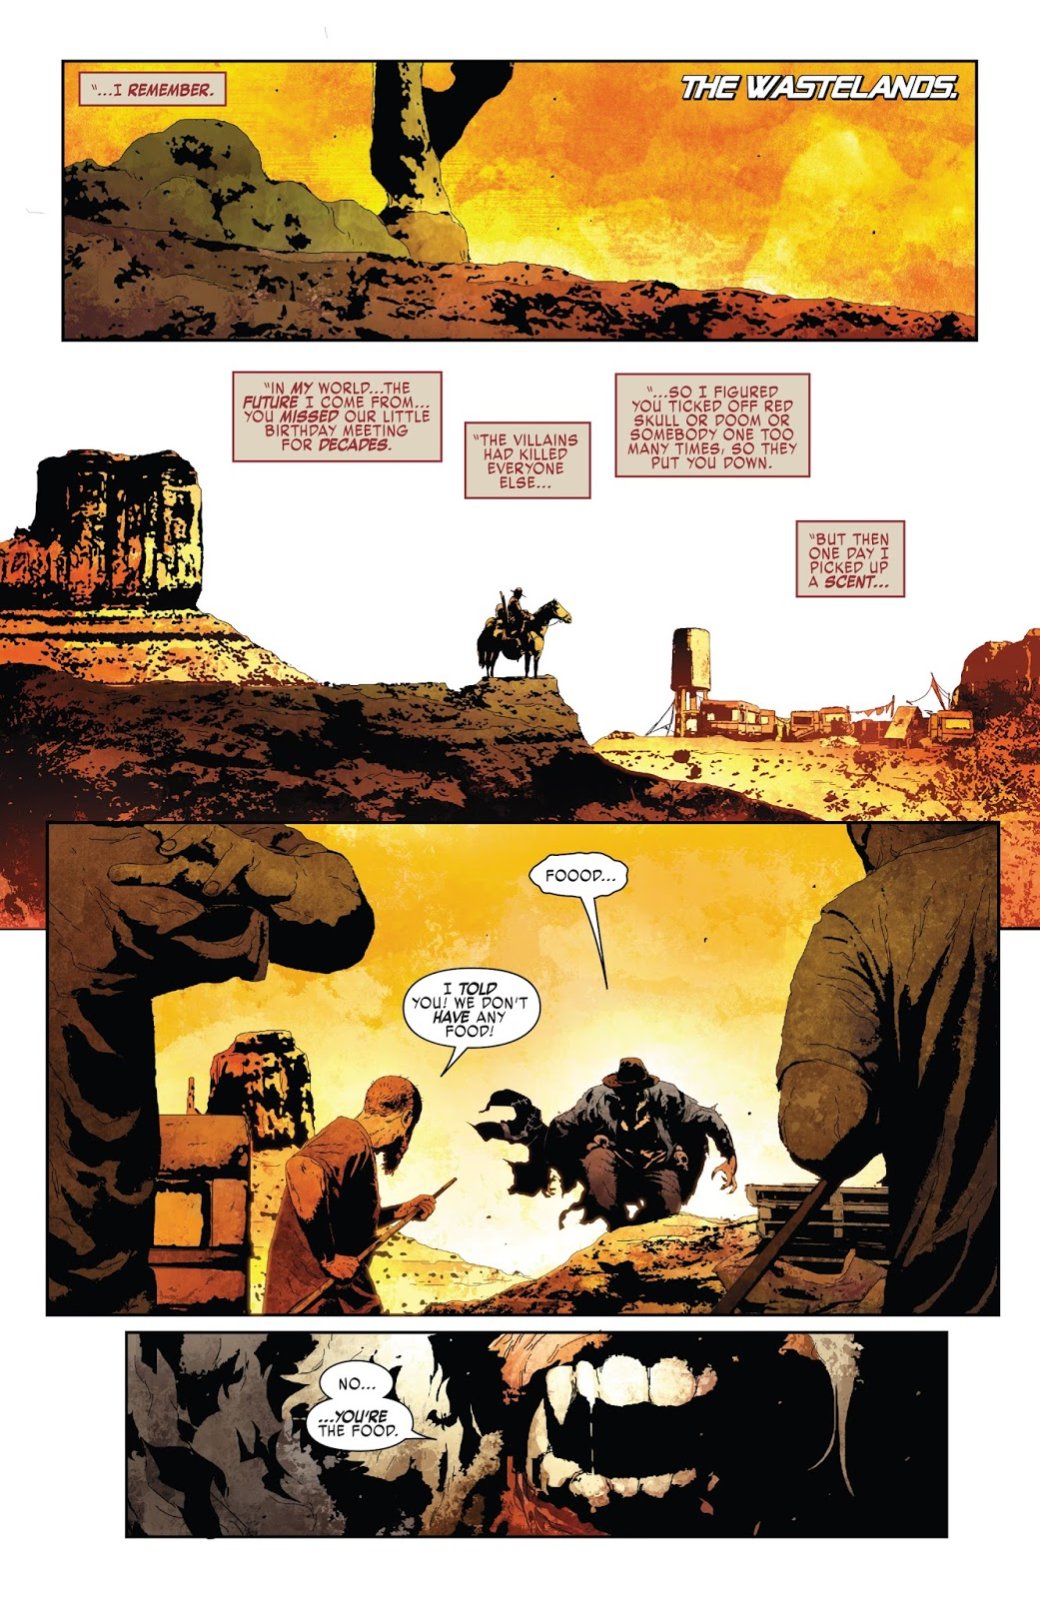 Галерея Галерея. Как выглядят герои и злодеи Marvel в постапокалиптическом будущем «Старика Логана»? - 3 фото